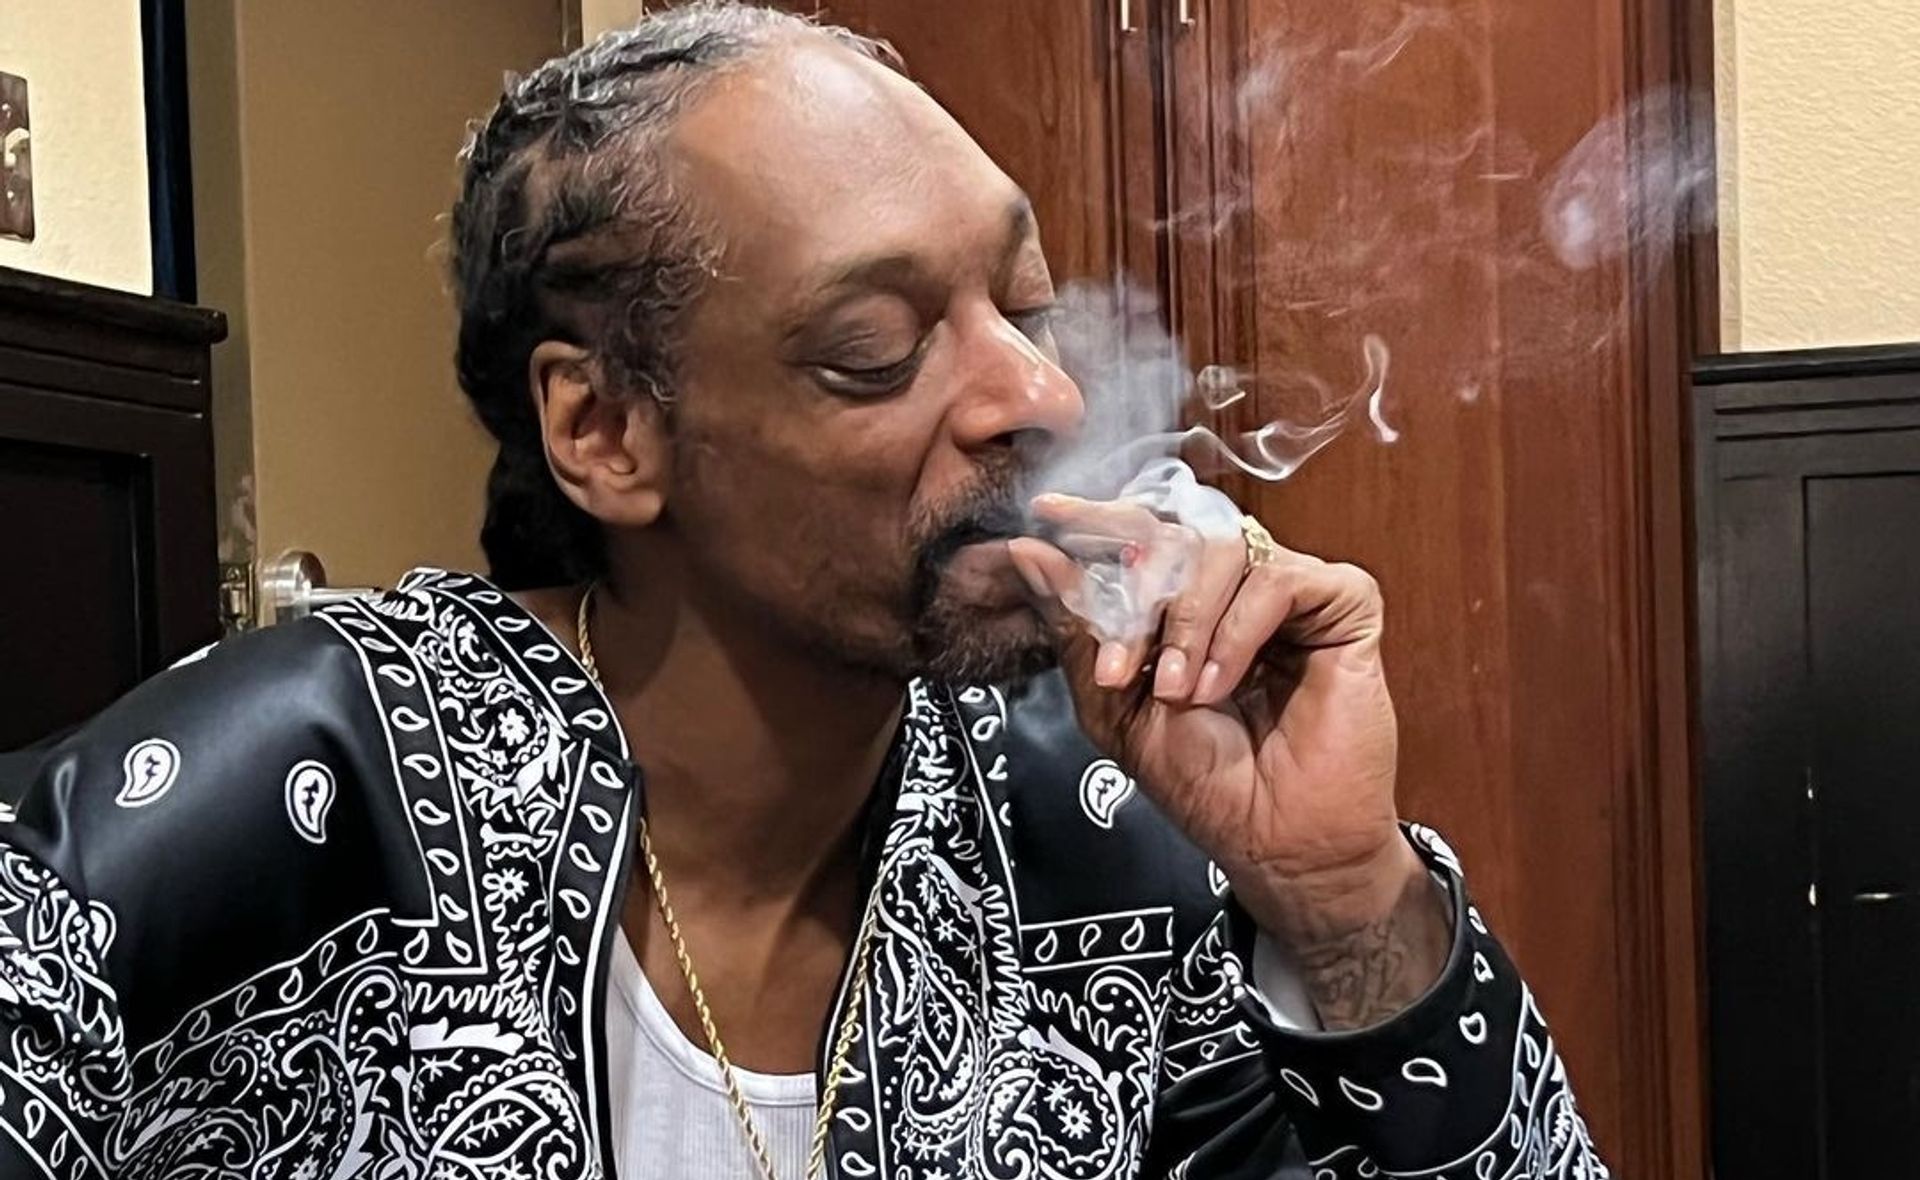 jonkodraaier Snoop Dogg salaris